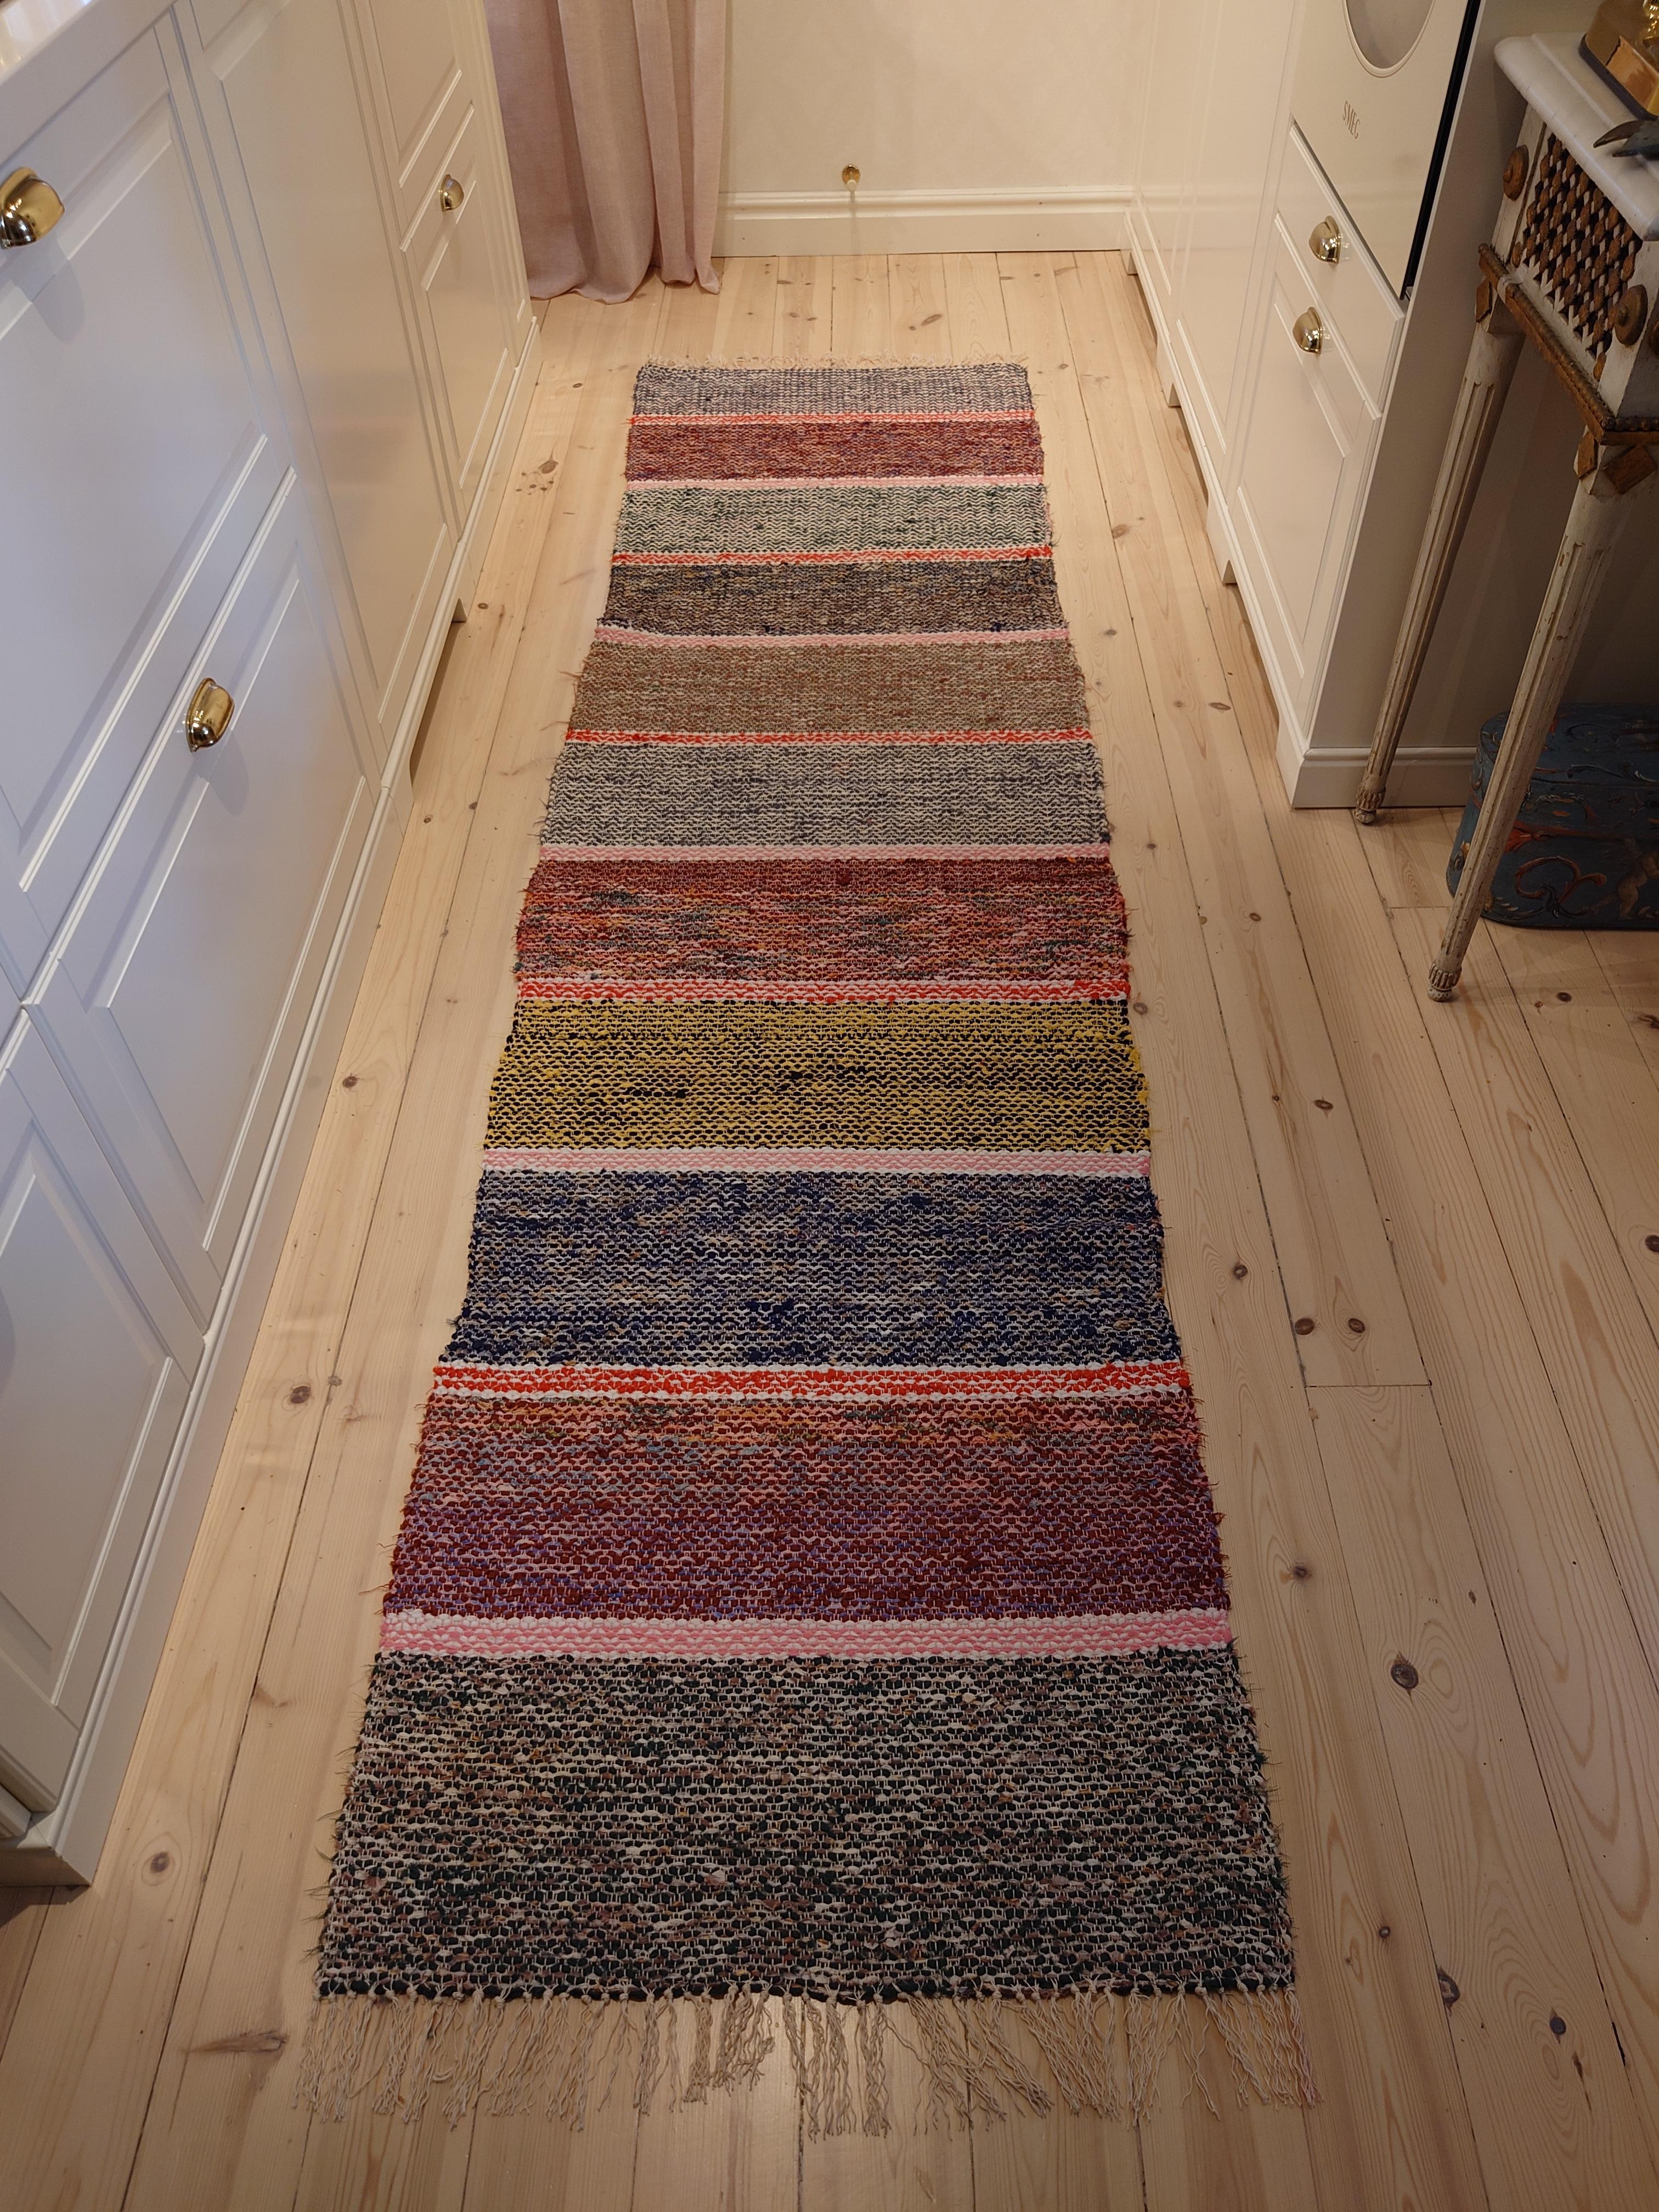 Ein fantastischer schwedischer Fleckerlteppich in schönen Farben und Mustern.
Handgewebt in Boden Nordschweden .
Der Teppich ist frisch gewaschen.
Vintage & antike schwedische Rag Rugs aus Schweden gibt es in einer Vielzahl von Farben und Mustern.